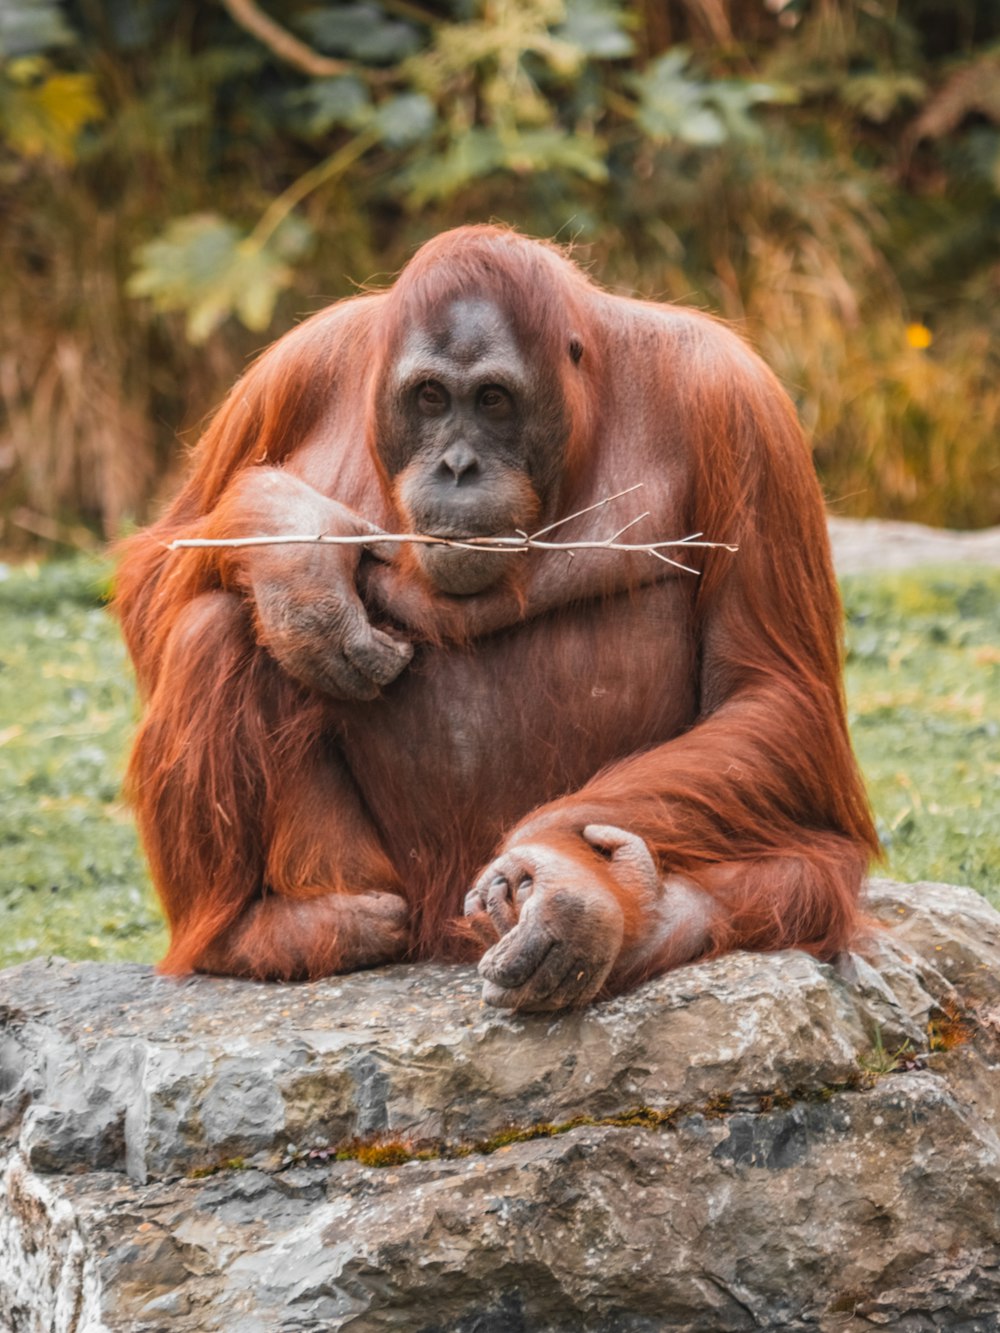 a monkey holding a stick